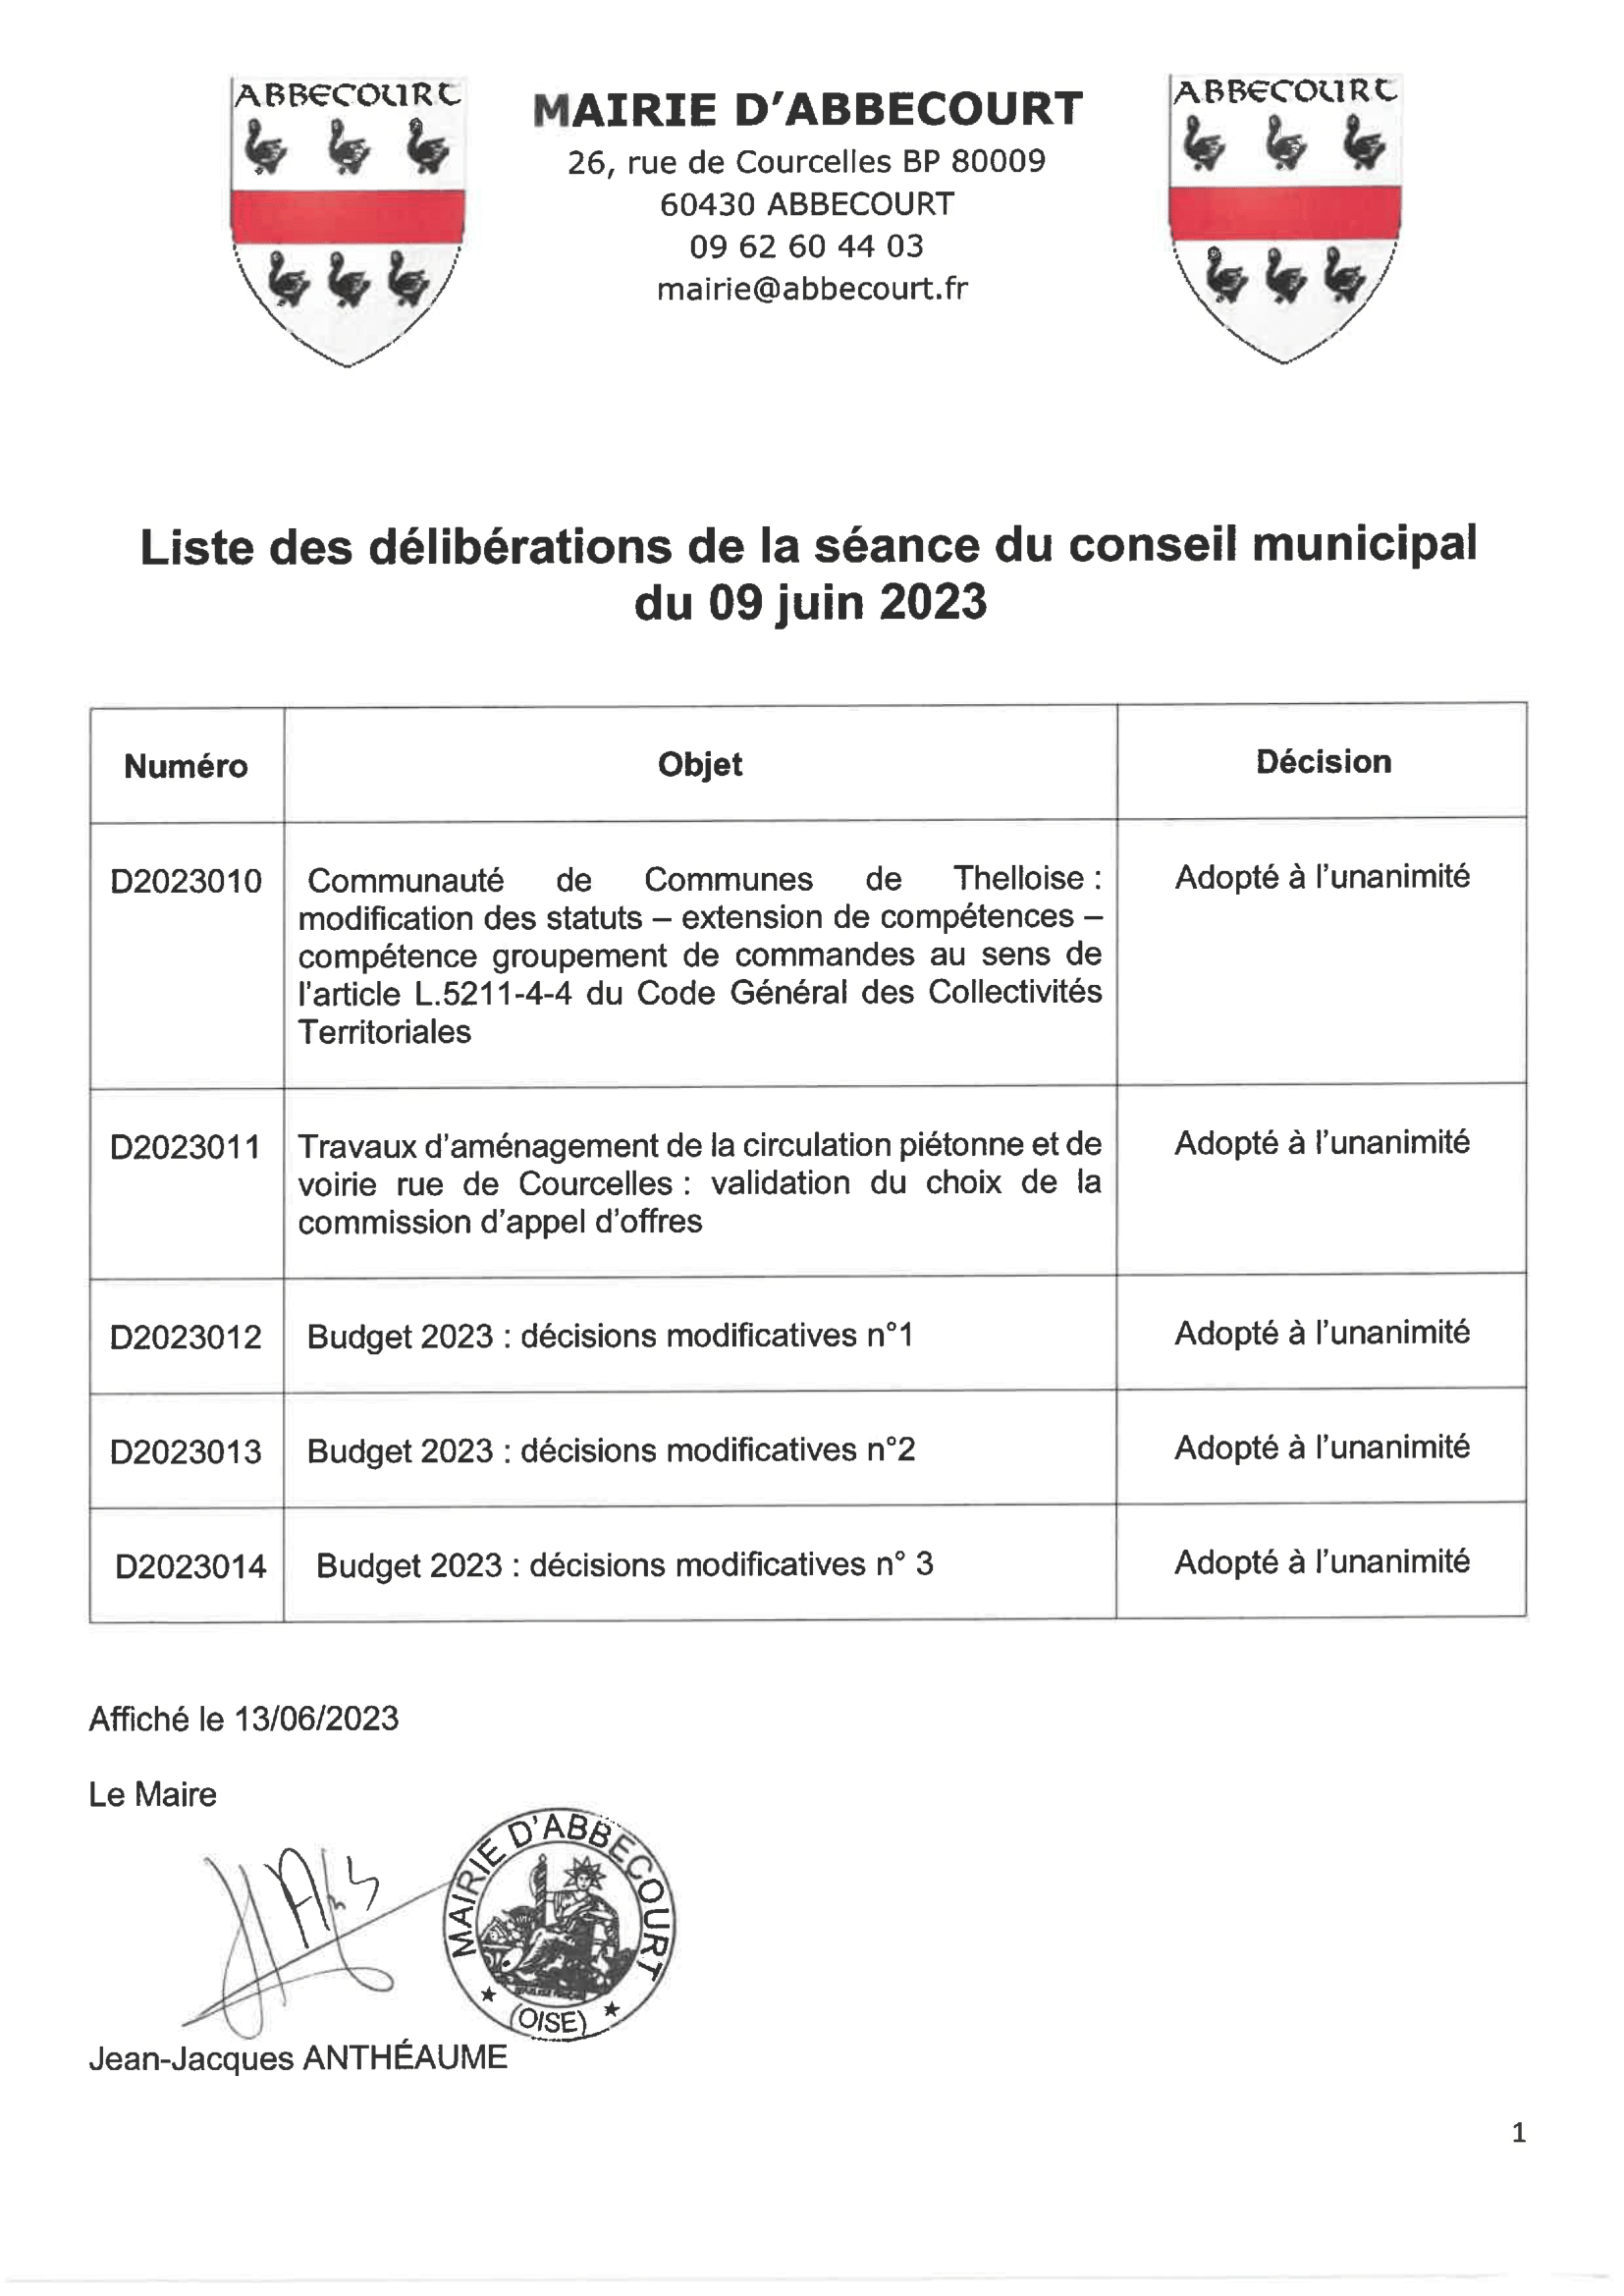 Liste des délibérations de la réunion du conseil municipal du 9 juin 2023-1.png